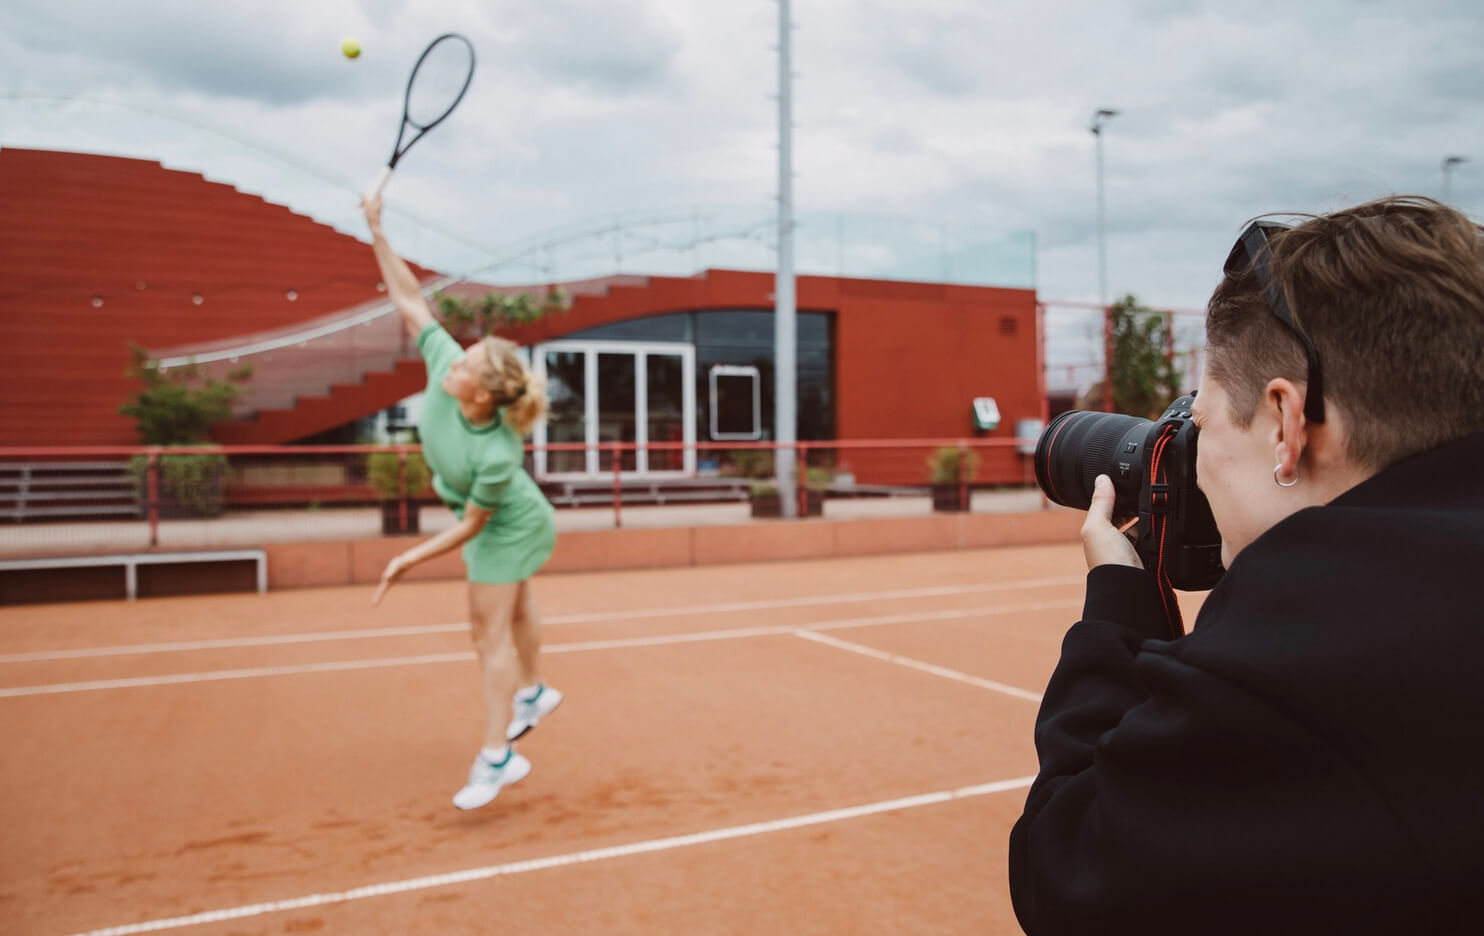 Match de tennis capturé par une photographe